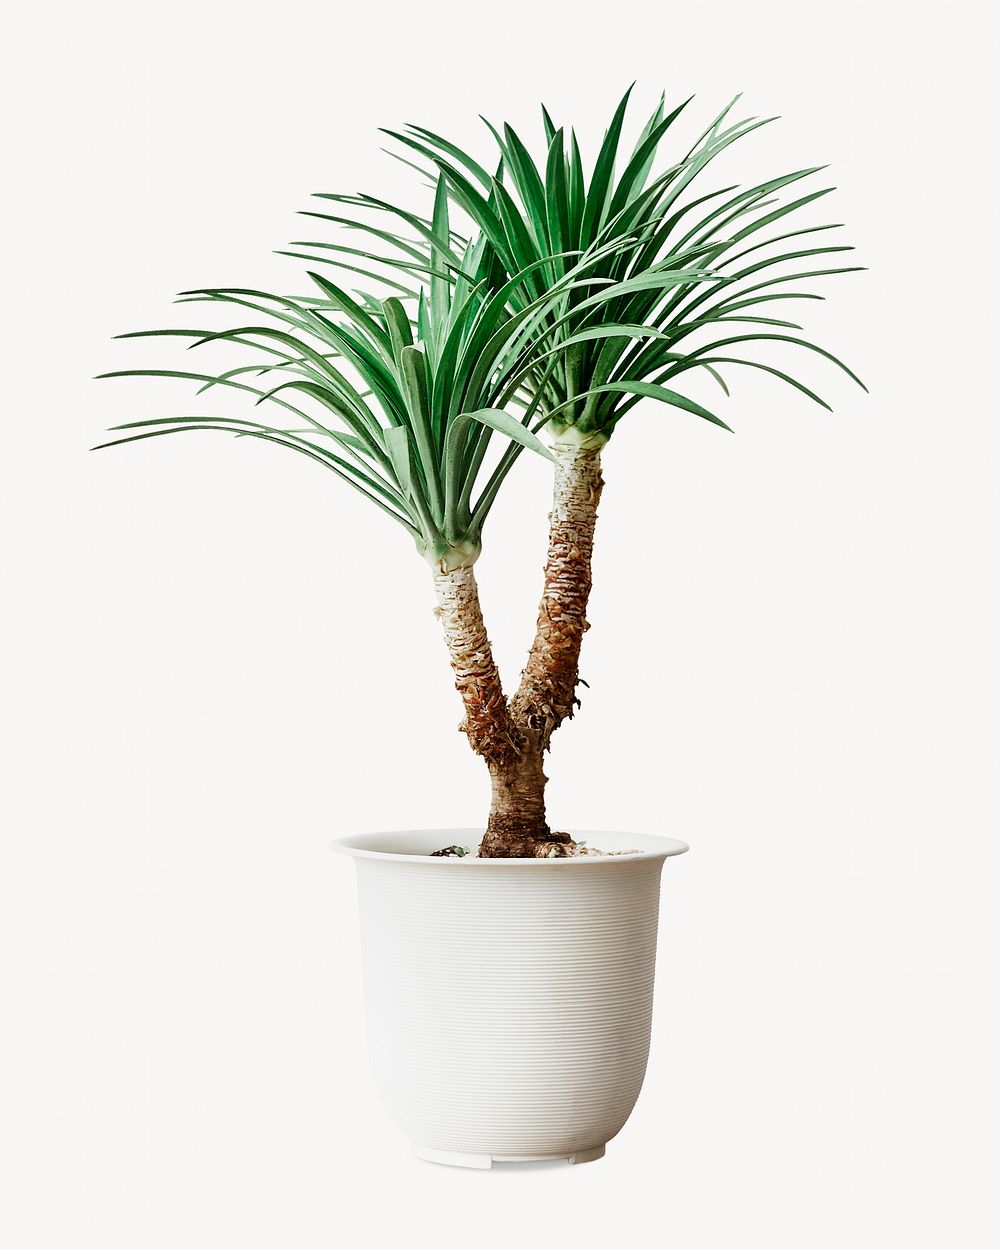 Agave palm tree, isolated botanical image